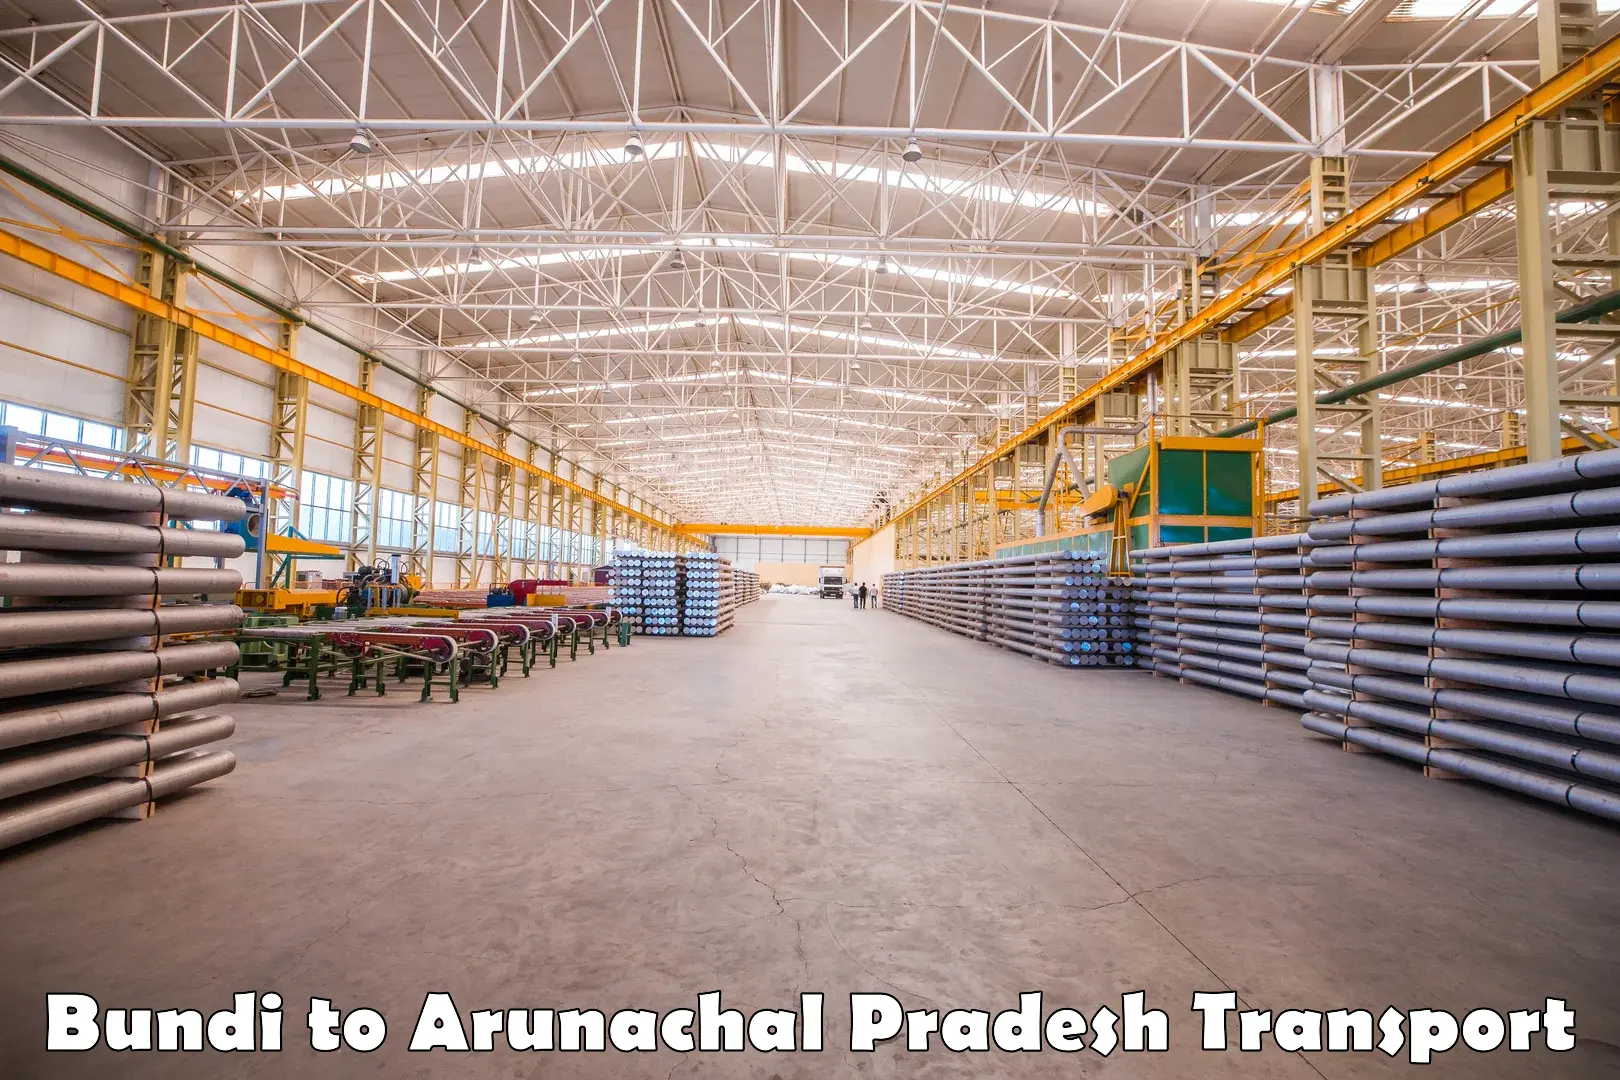 Air freight transport services Bundi to Arunachal Pradesh